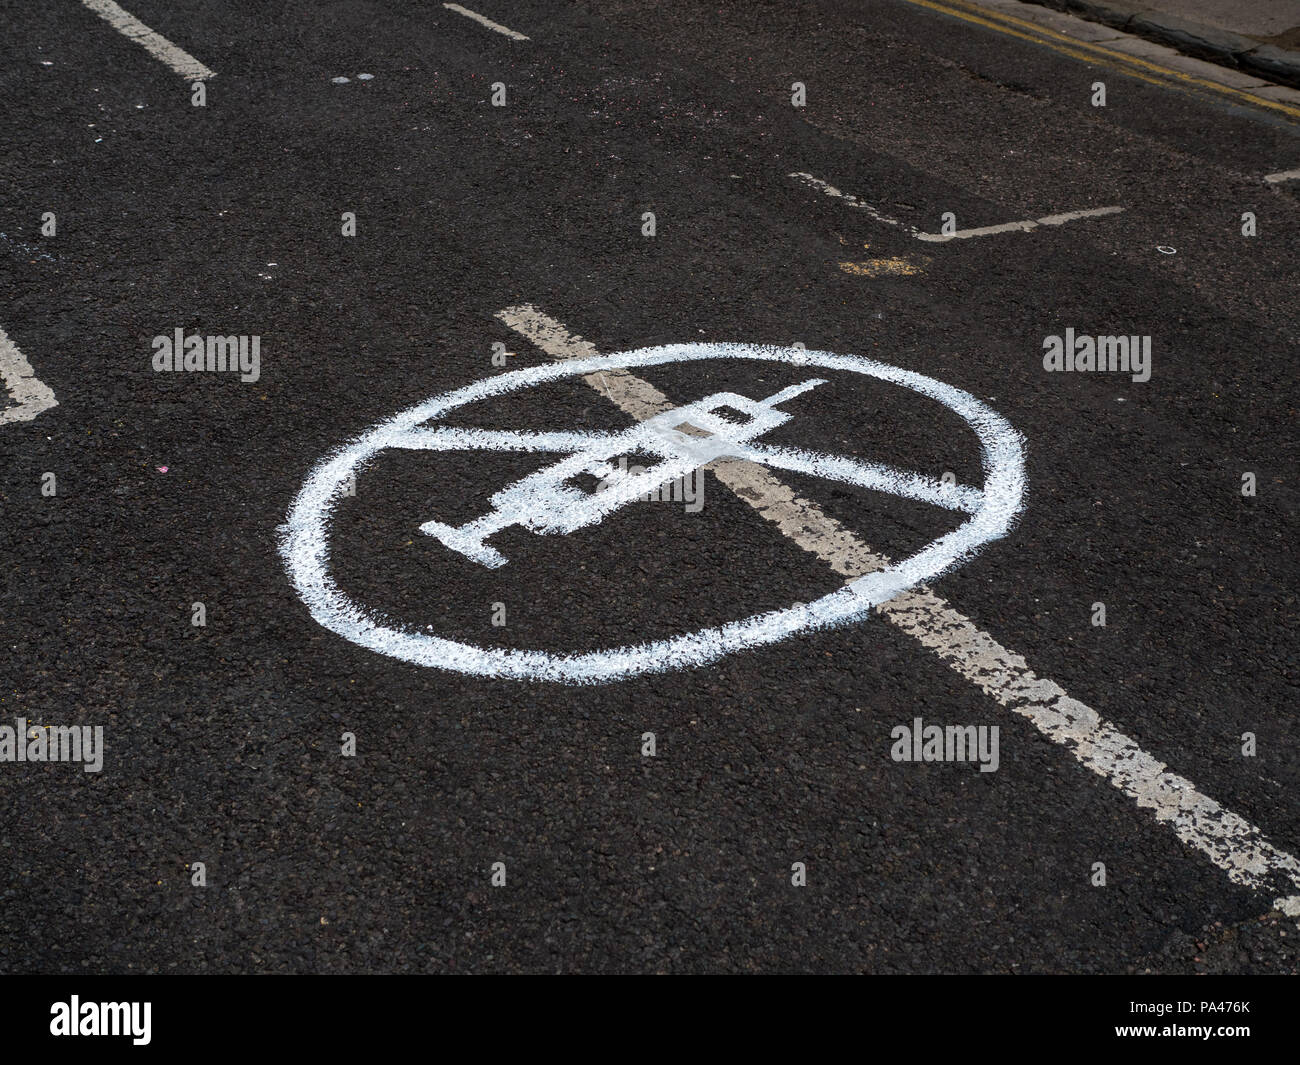 Bewohner verwenden Sie die Graffiti, die Drogenkonsumenten, Cambridge st abzuschrecken, Reading, Berkshire, England, UK, GB. Stockfoto